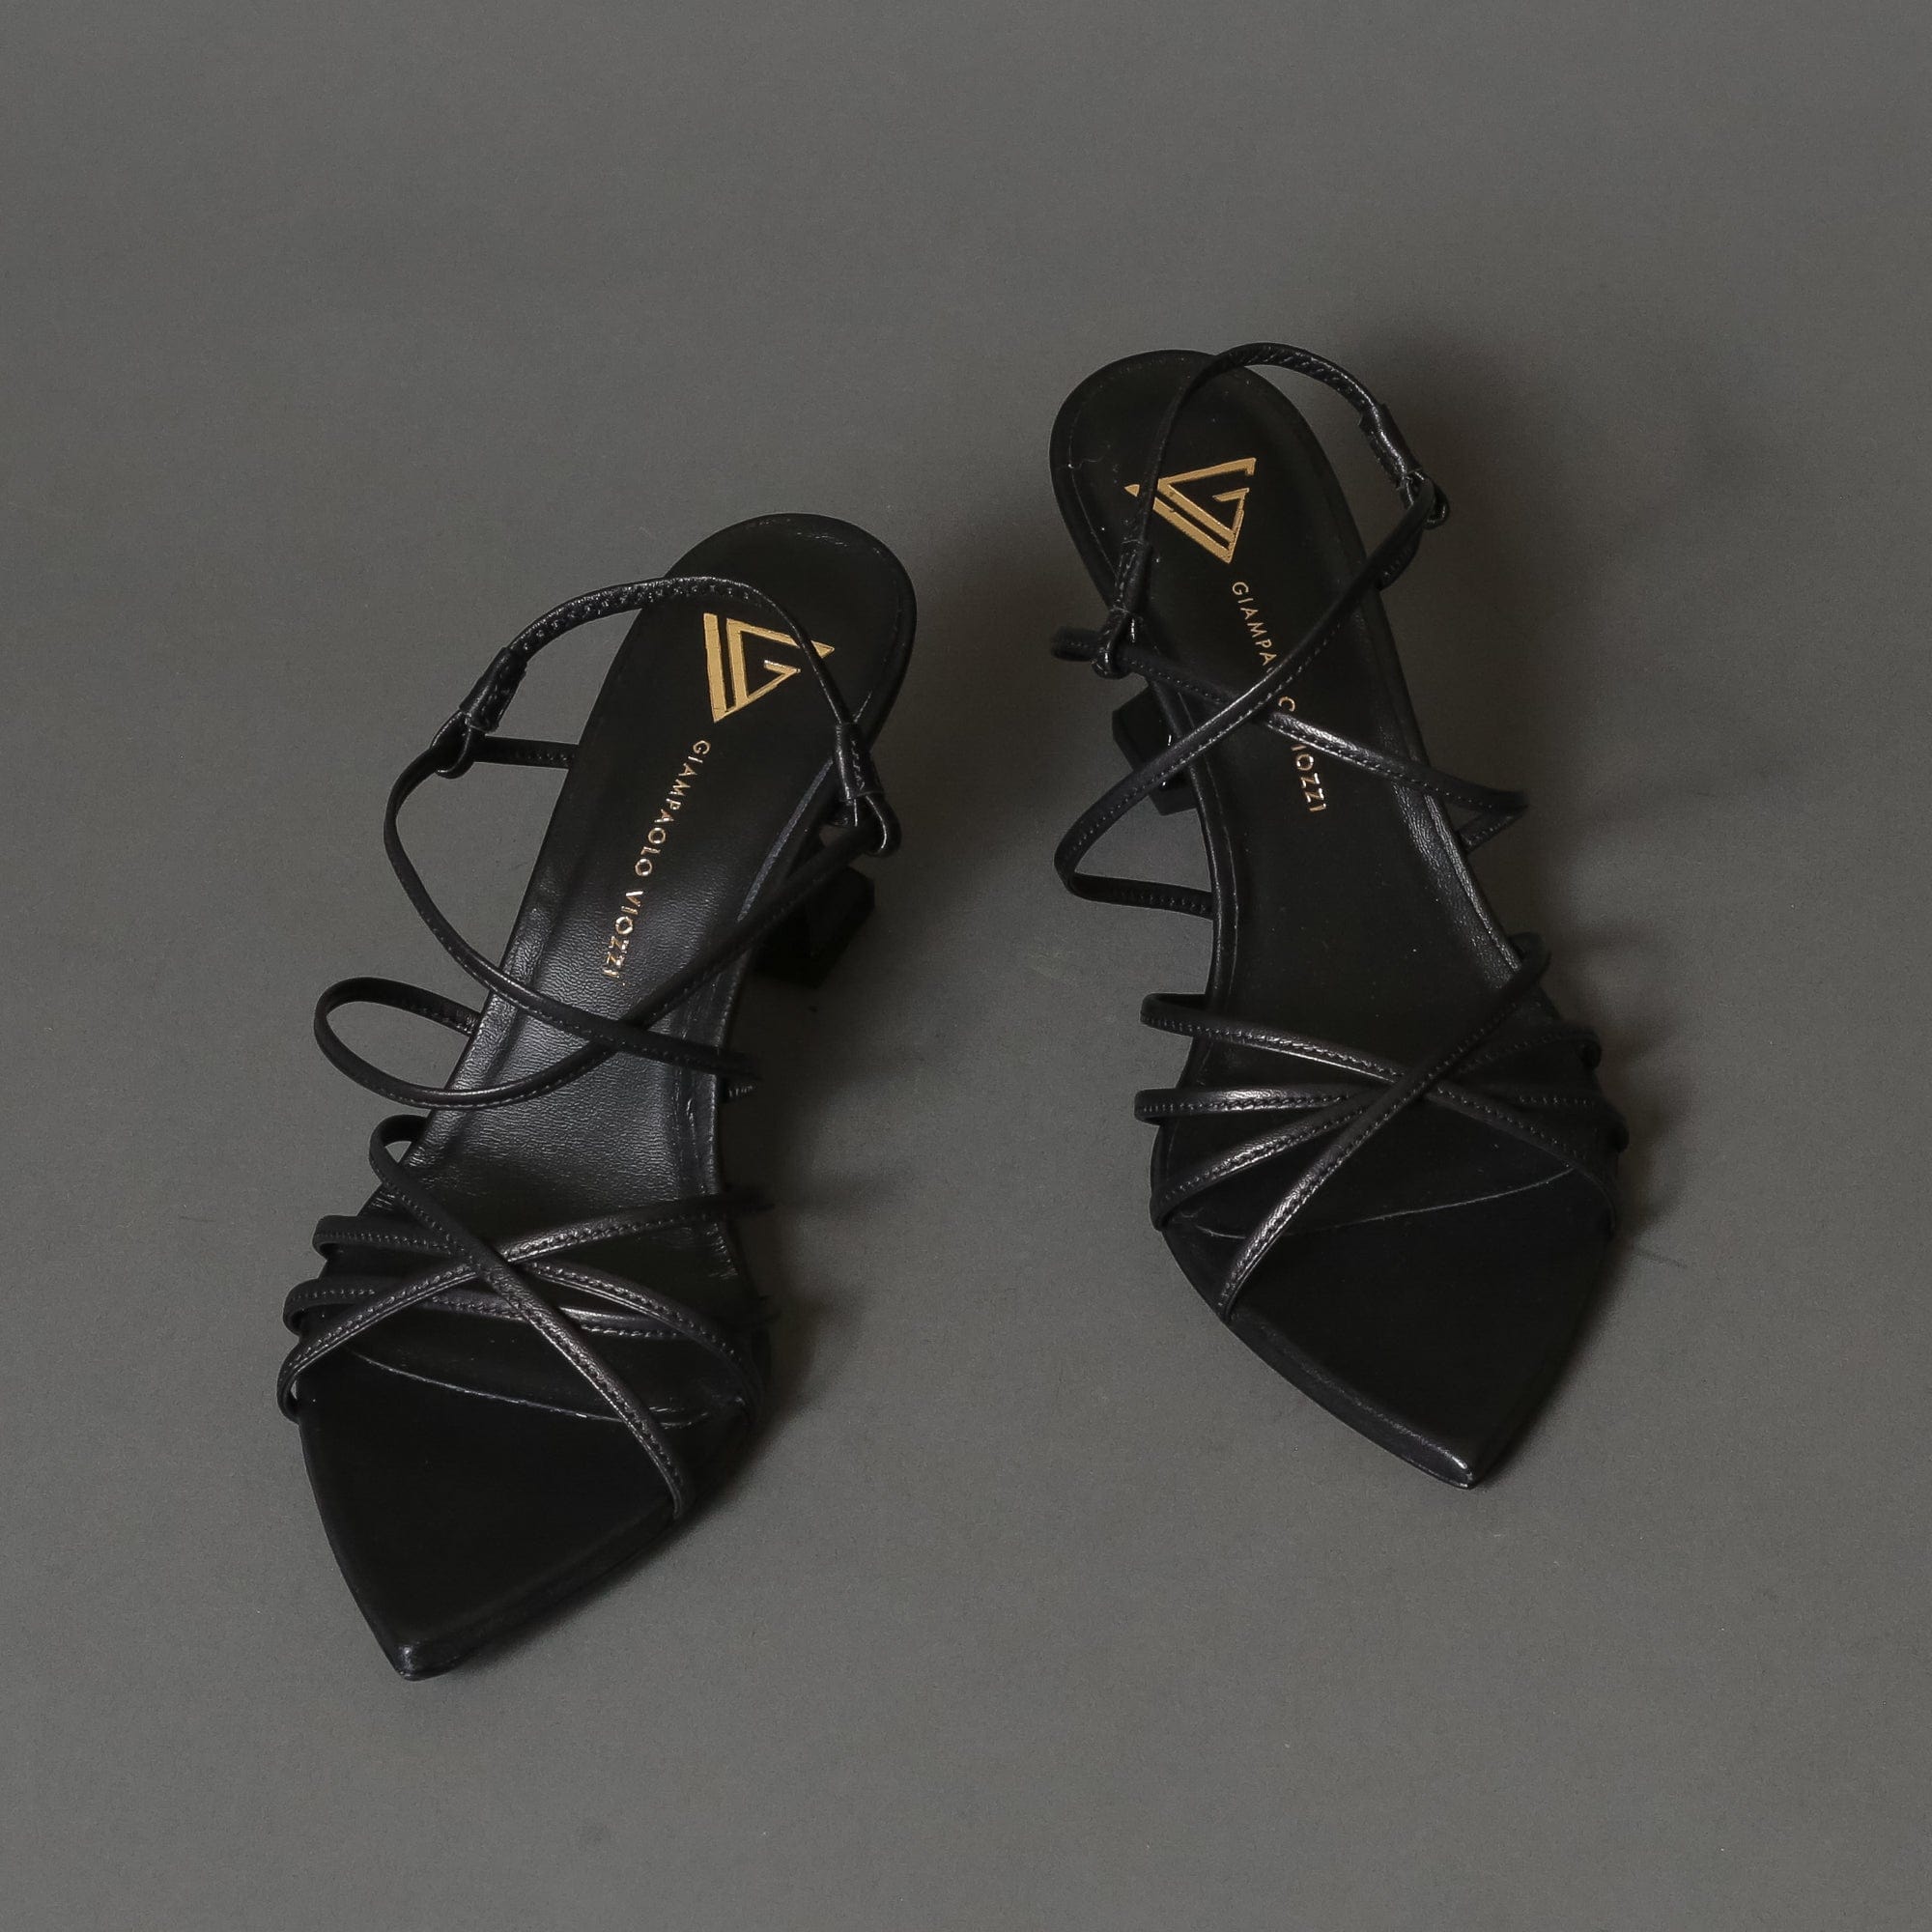 Giampaolo Viozzi Womens Sandal TAN 3121 Black